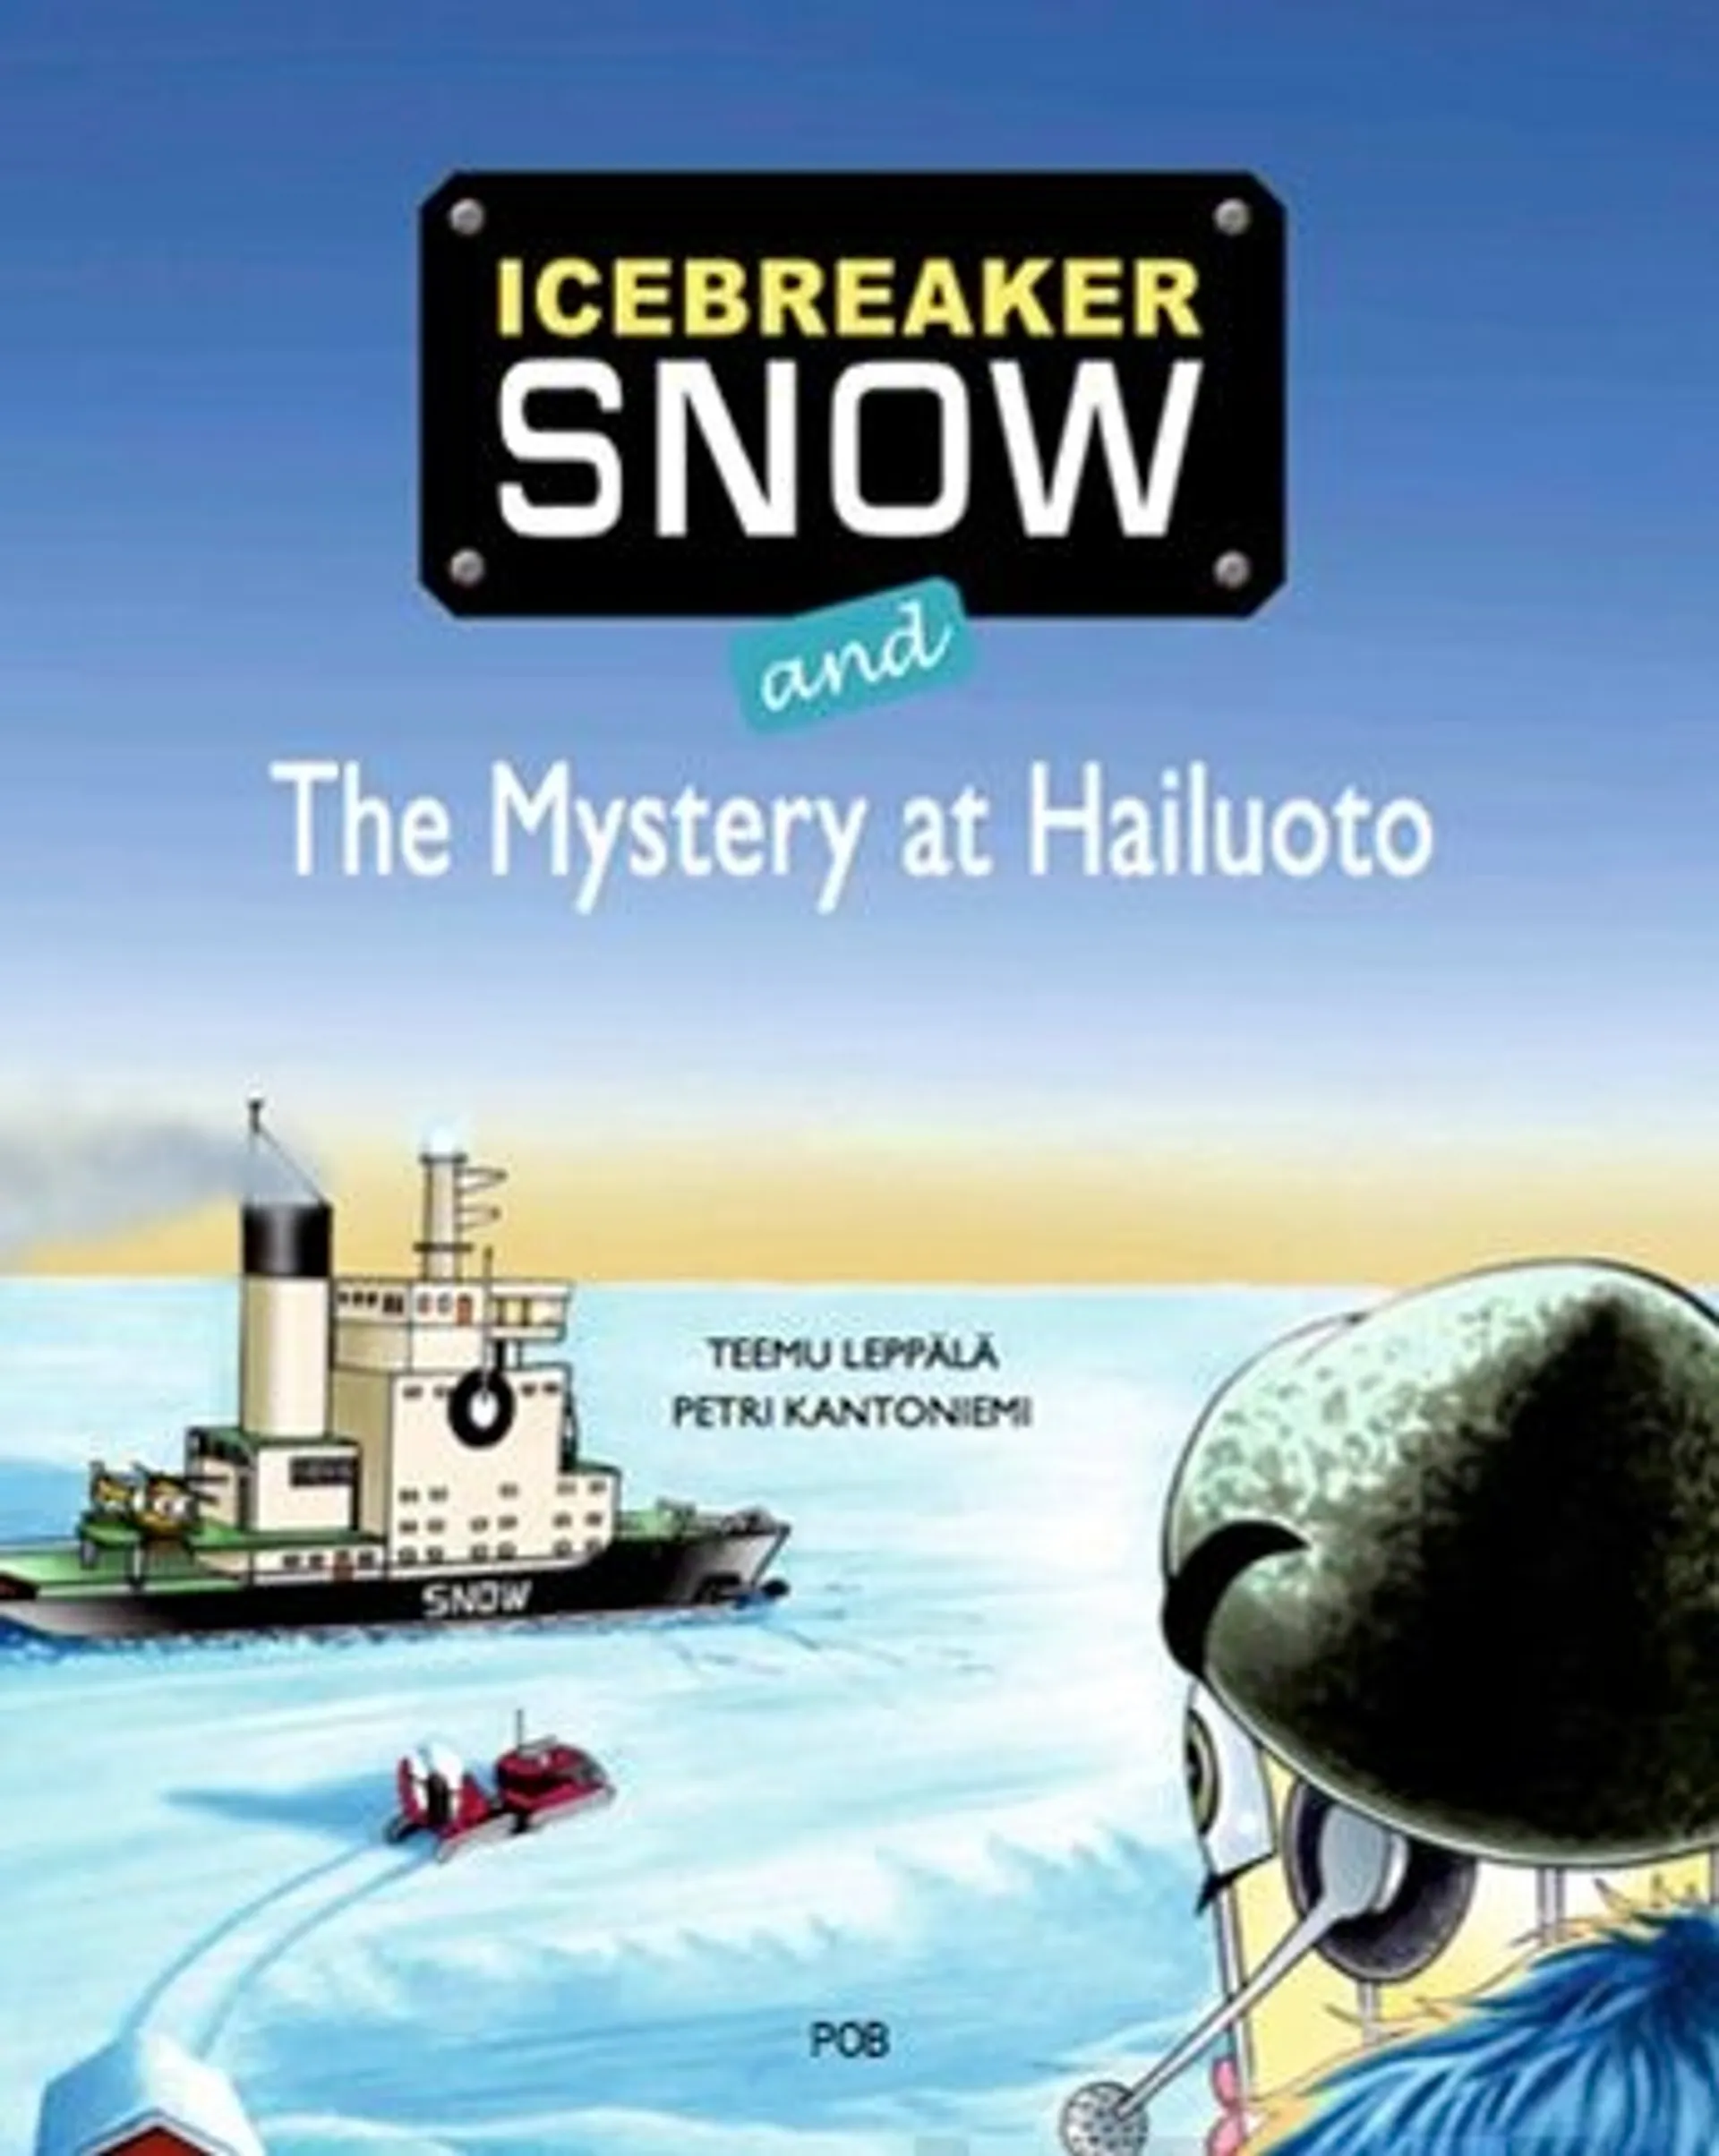 Leppälä, Icebreaker Snow and The Mystery at Hailuoto